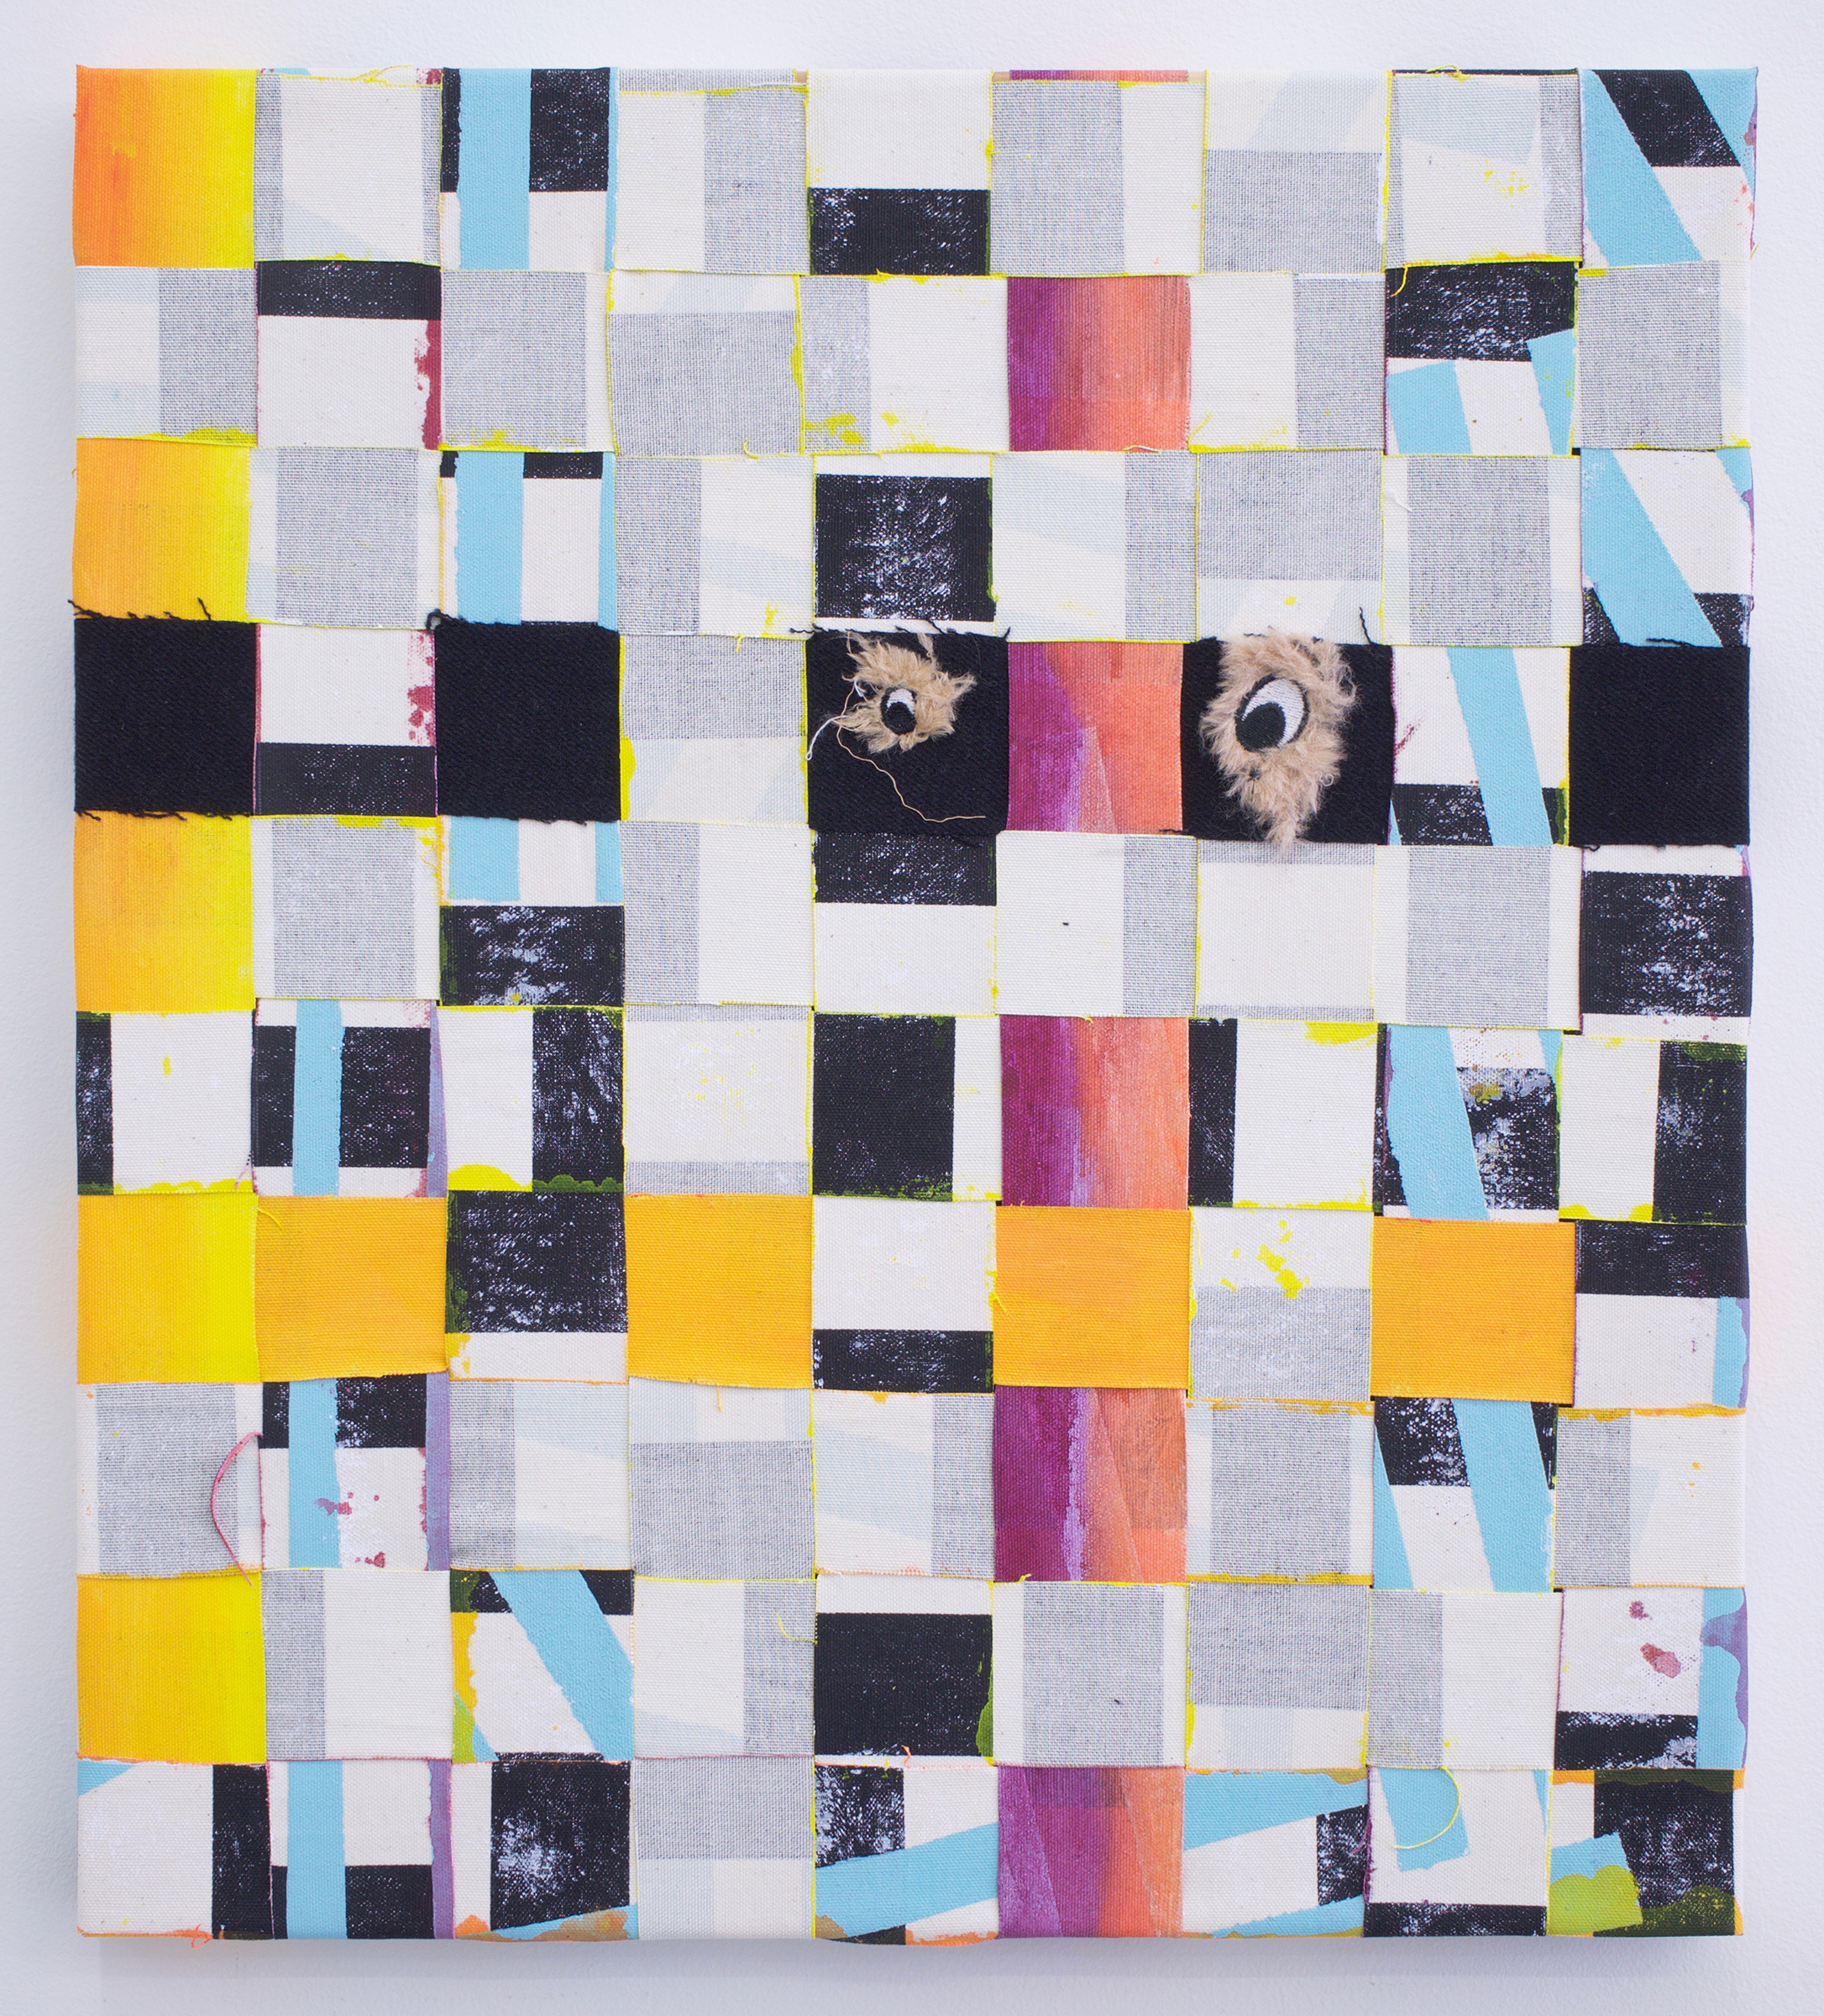  AMANDA CURRERI Senses, 2018 Acrylic and dog toy eyes on recycled fabric, 21” x 19" 